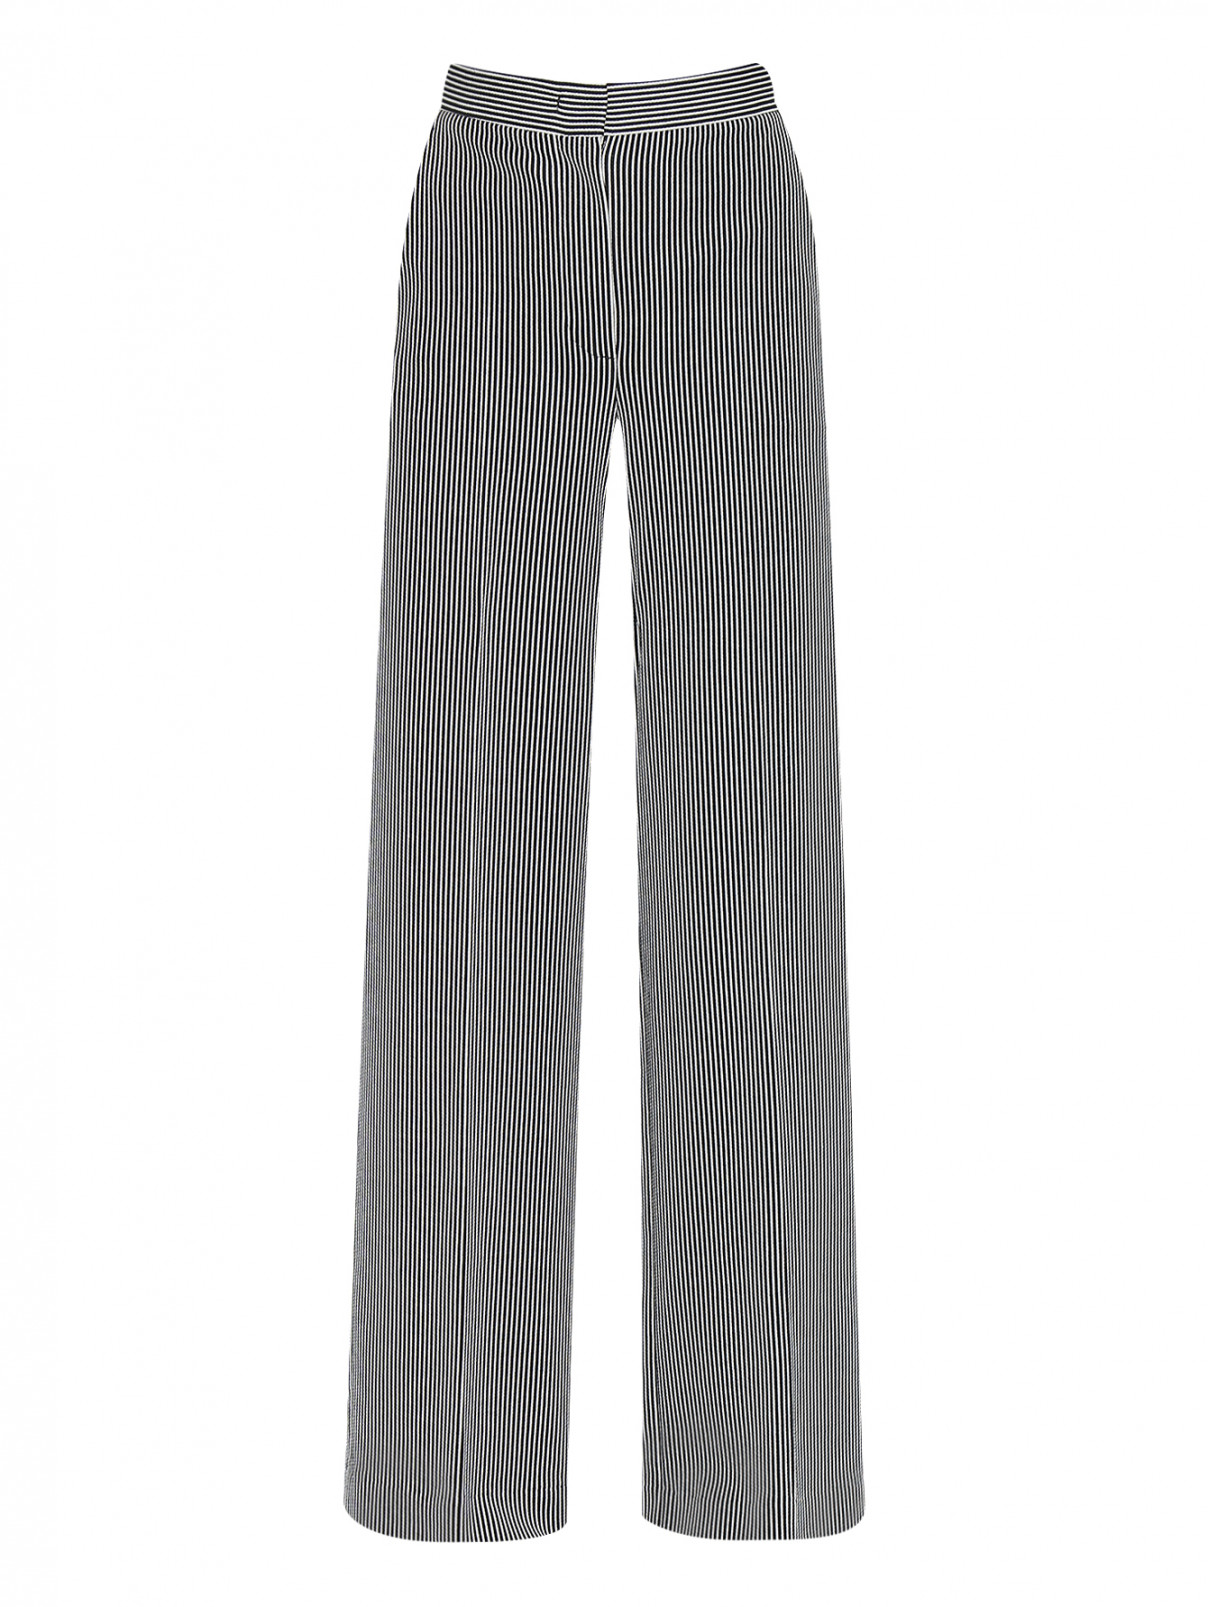 Трикотажные брюки с узором Max Mara  –  Общий вид  – Цвет:  Черный